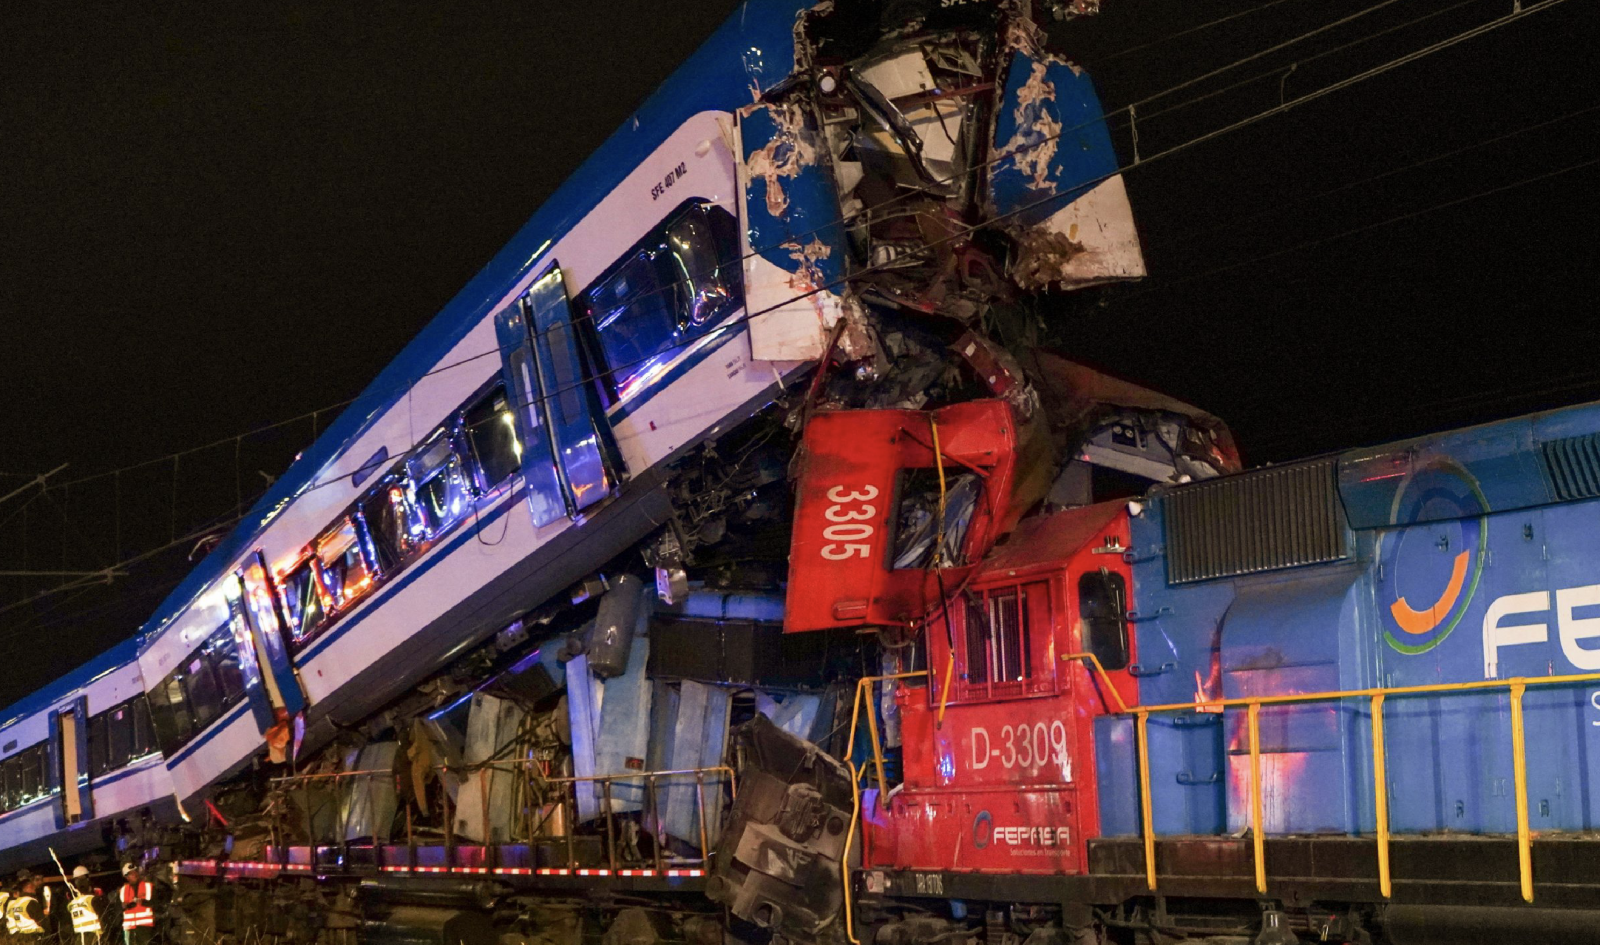 Összeroncsolódott vasúti szerelvények a chilei San Bernardo közelében történt vonatbaleset helyszínén | Fotó: Híradó.hu/MTI